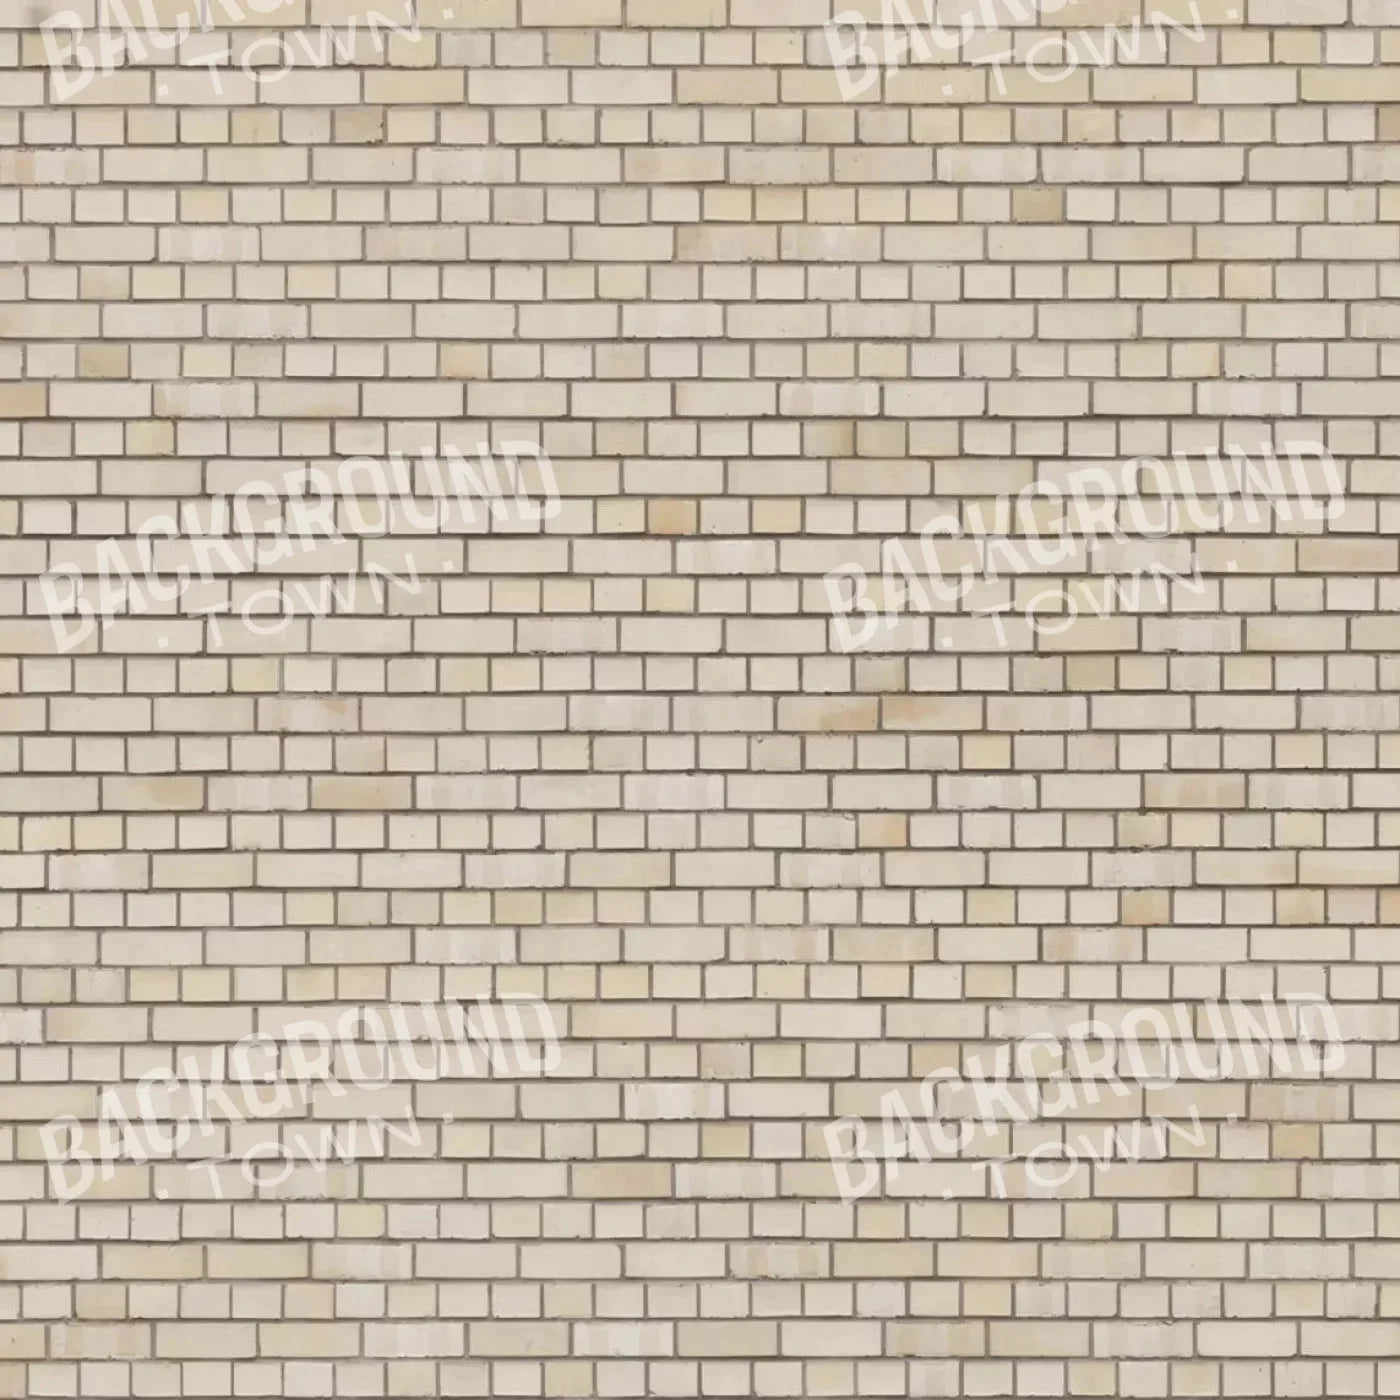 Brickwork Rubbermat Floor 5X5 ( 60 X Inch )